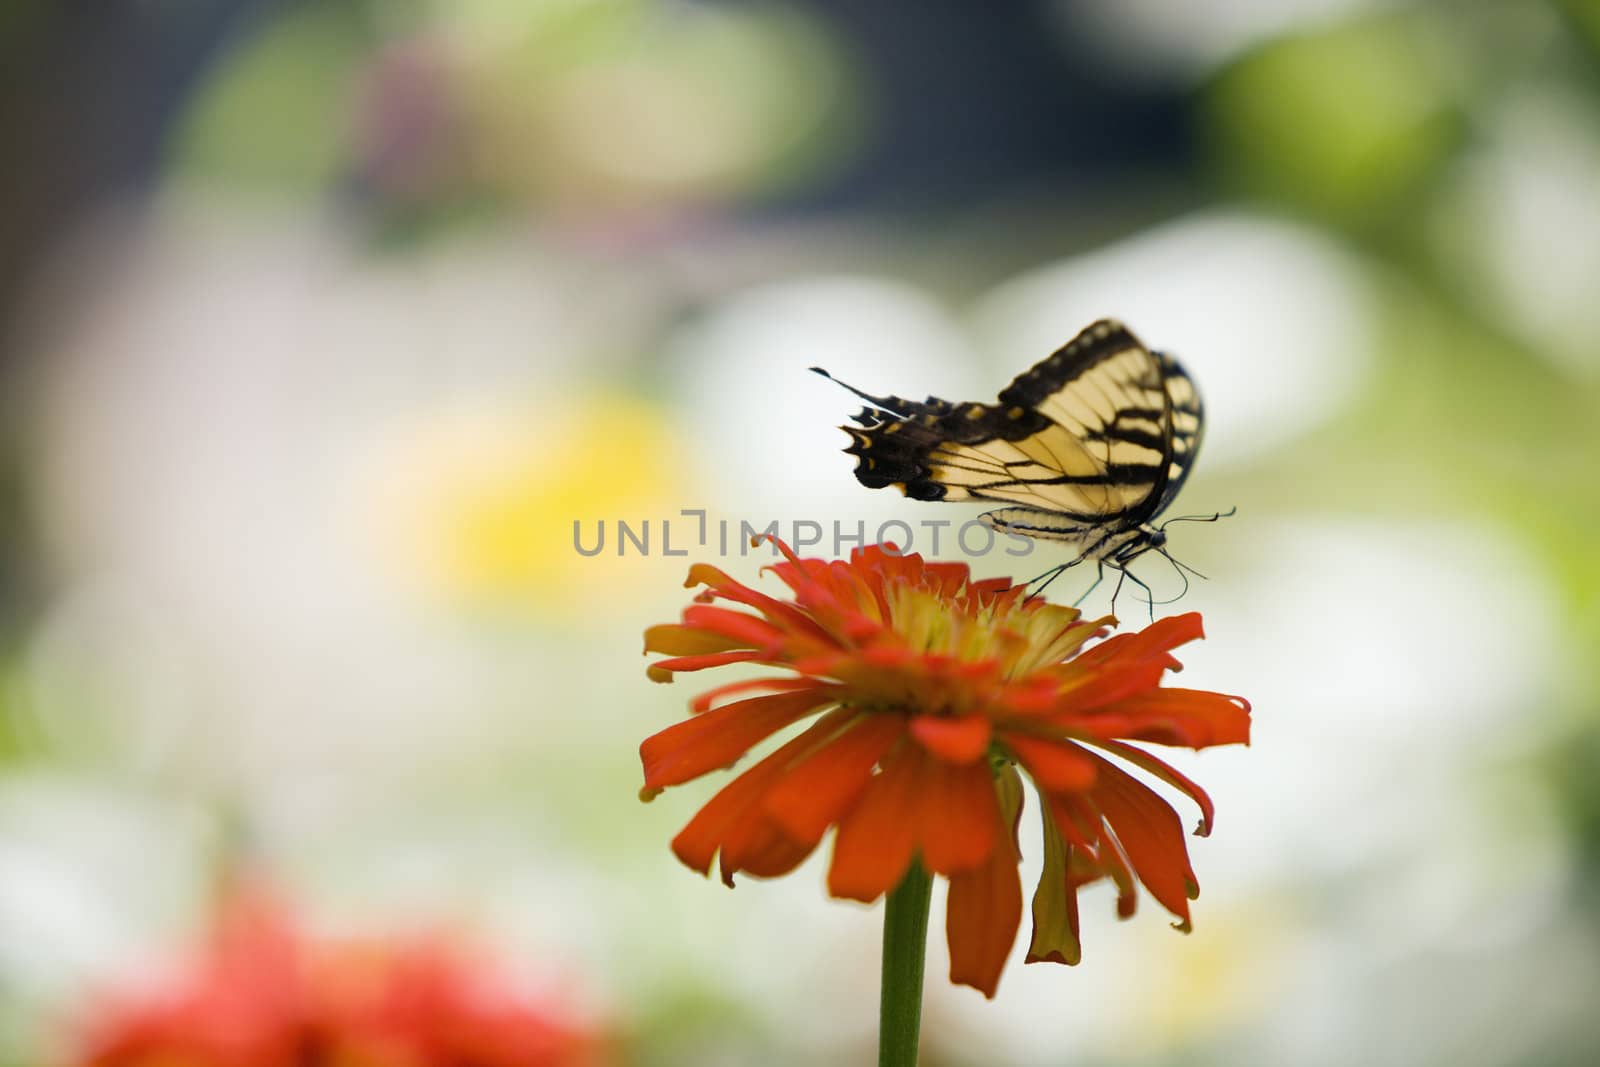 Butterfly on a Zinnia Flower by edbockstock